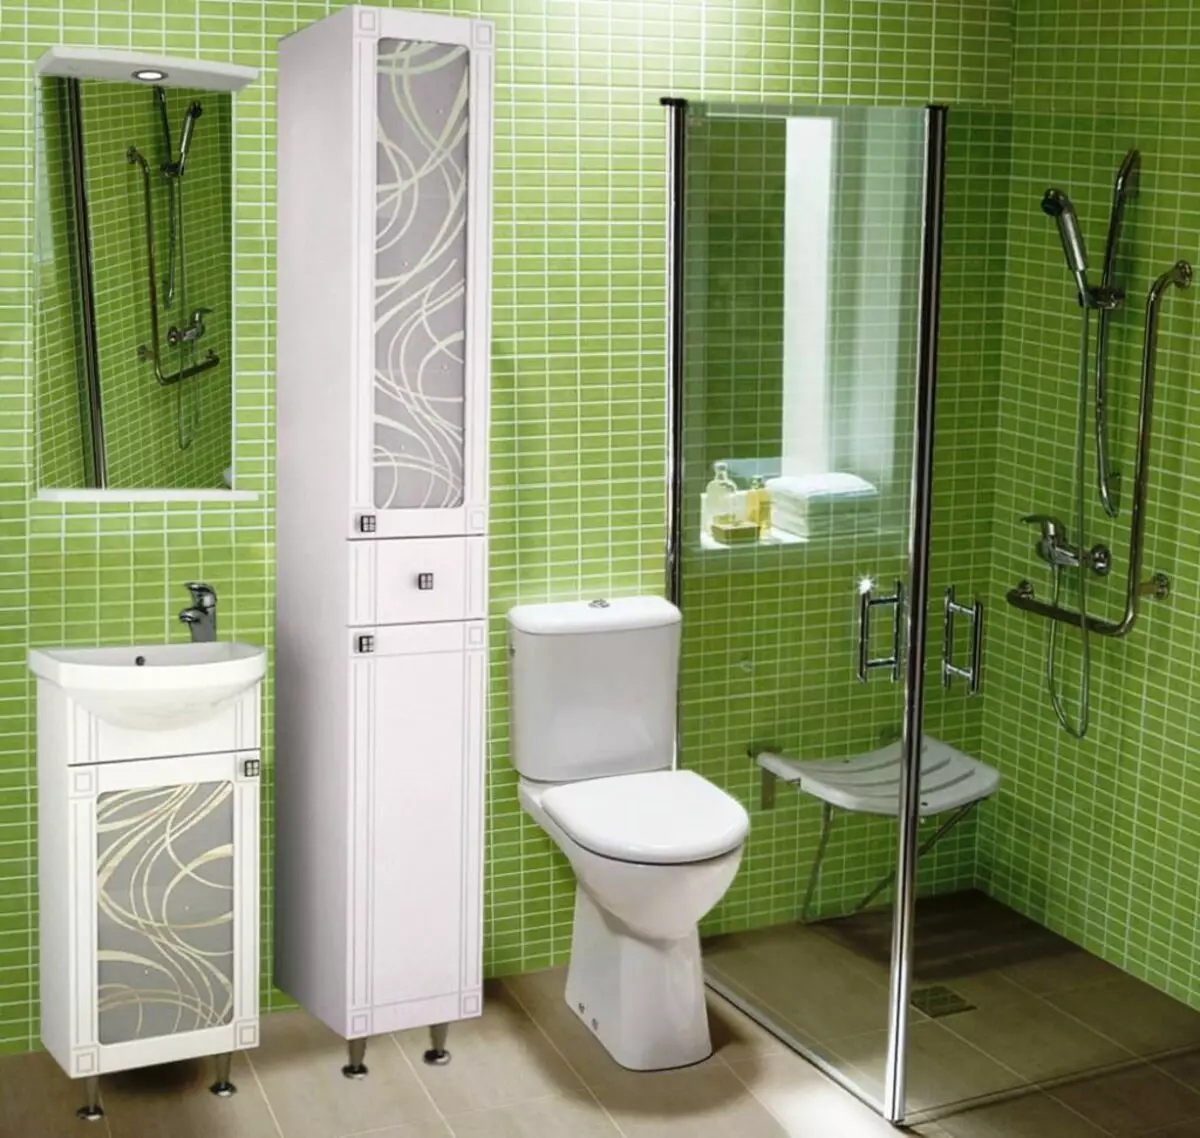 Kabinet di bilik mandi (96 foto): Model terbina dalam dan almari, model plastik dan plasterboard. Apakah ketinggian untuk menggantung loker ke atas sinki? 10388_75